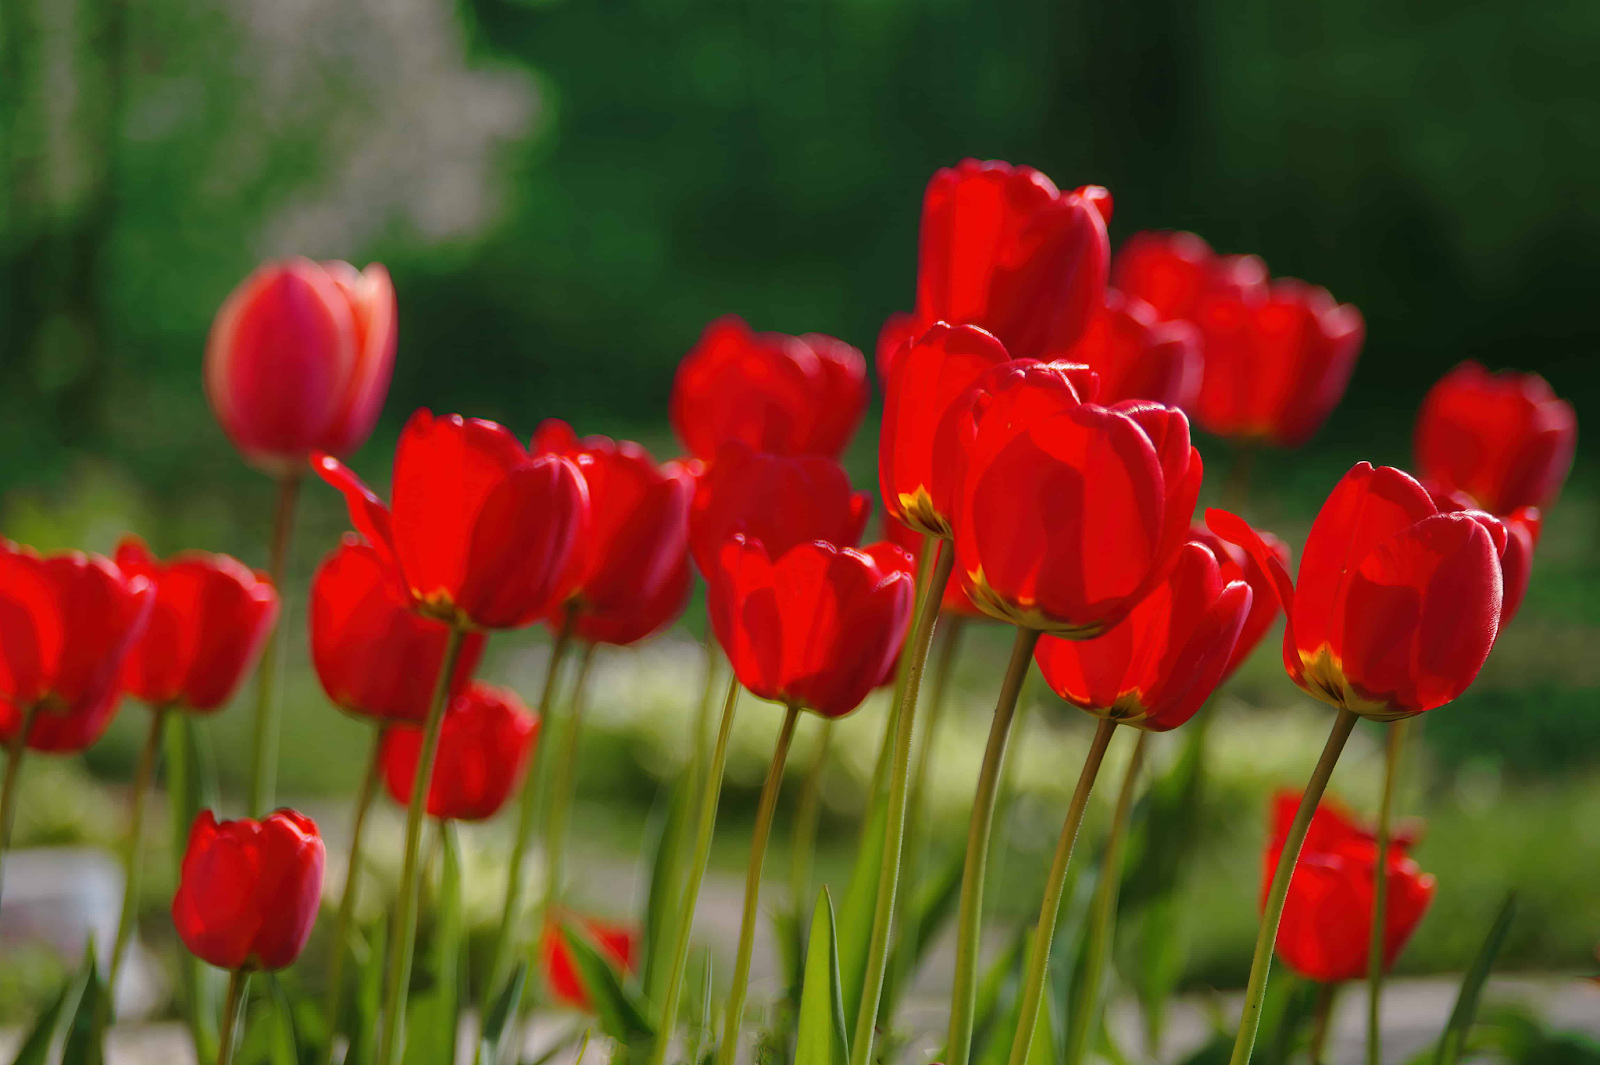 Red Tulips (Tulipa spp.)